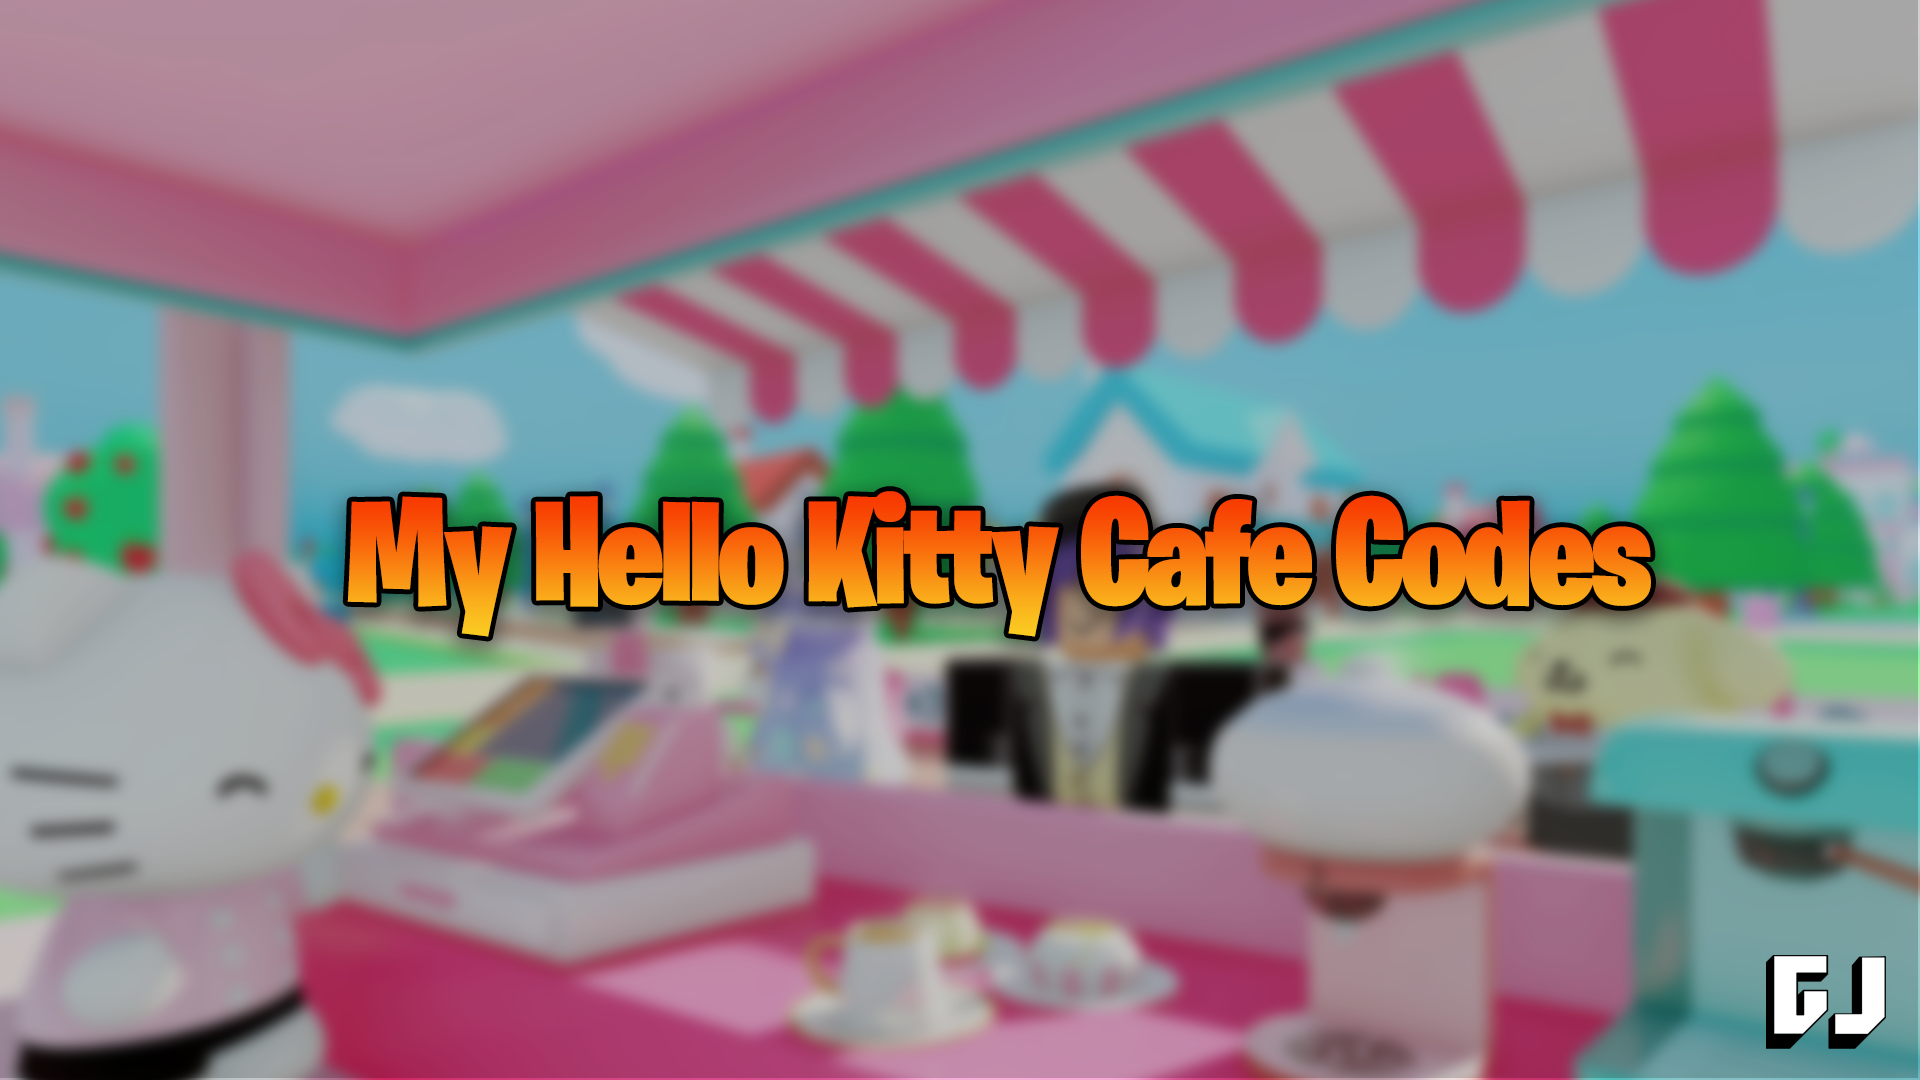 My Hello Kitty Cafe Codes Gamer Journalist